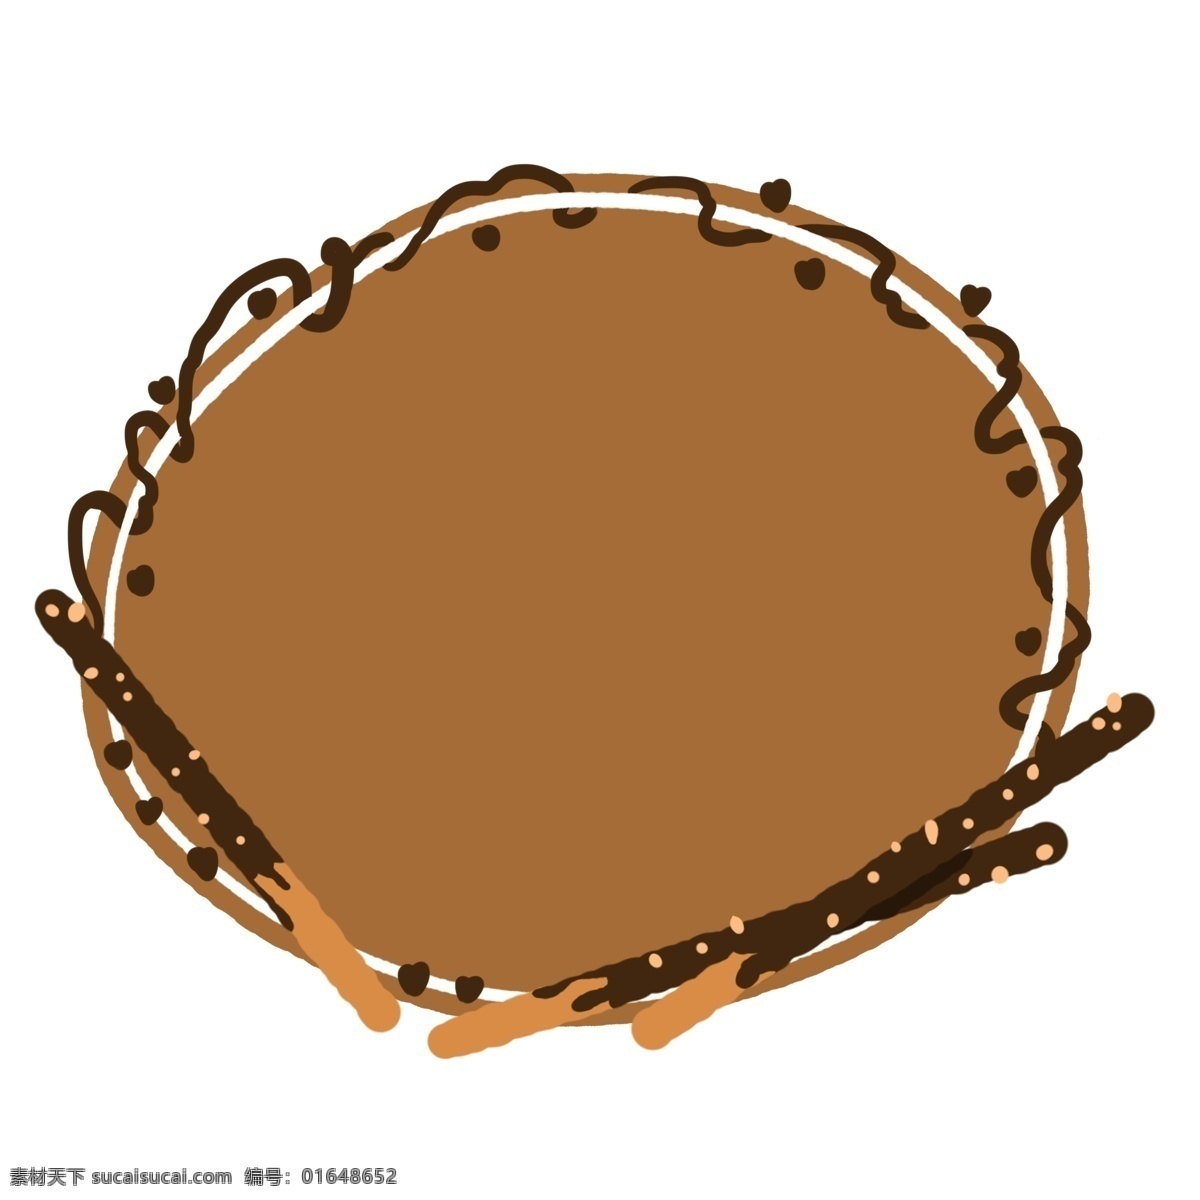 咖 色 饼干 边框 插画 咖色的边框 饼干边框 立体边框 食物边框 巧克力边框 边框装饰 边框插画